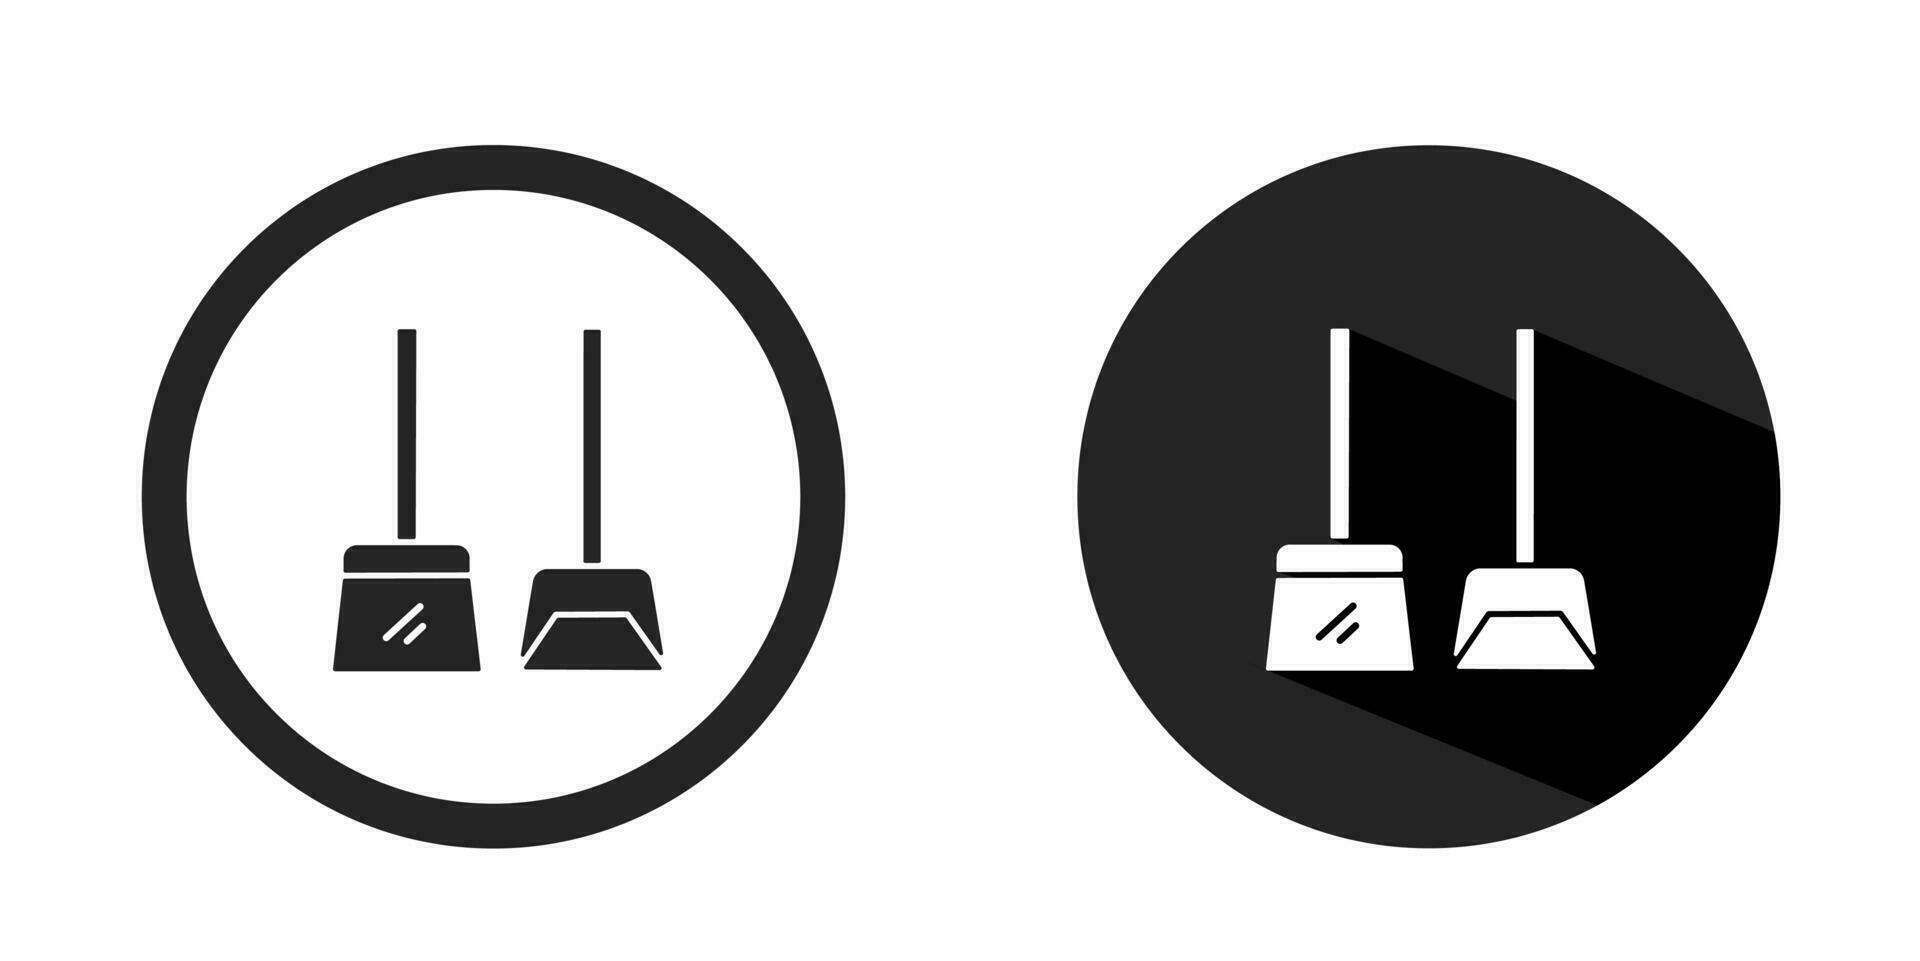 Broom logo. Broom icon vector design black color. Stock vector.